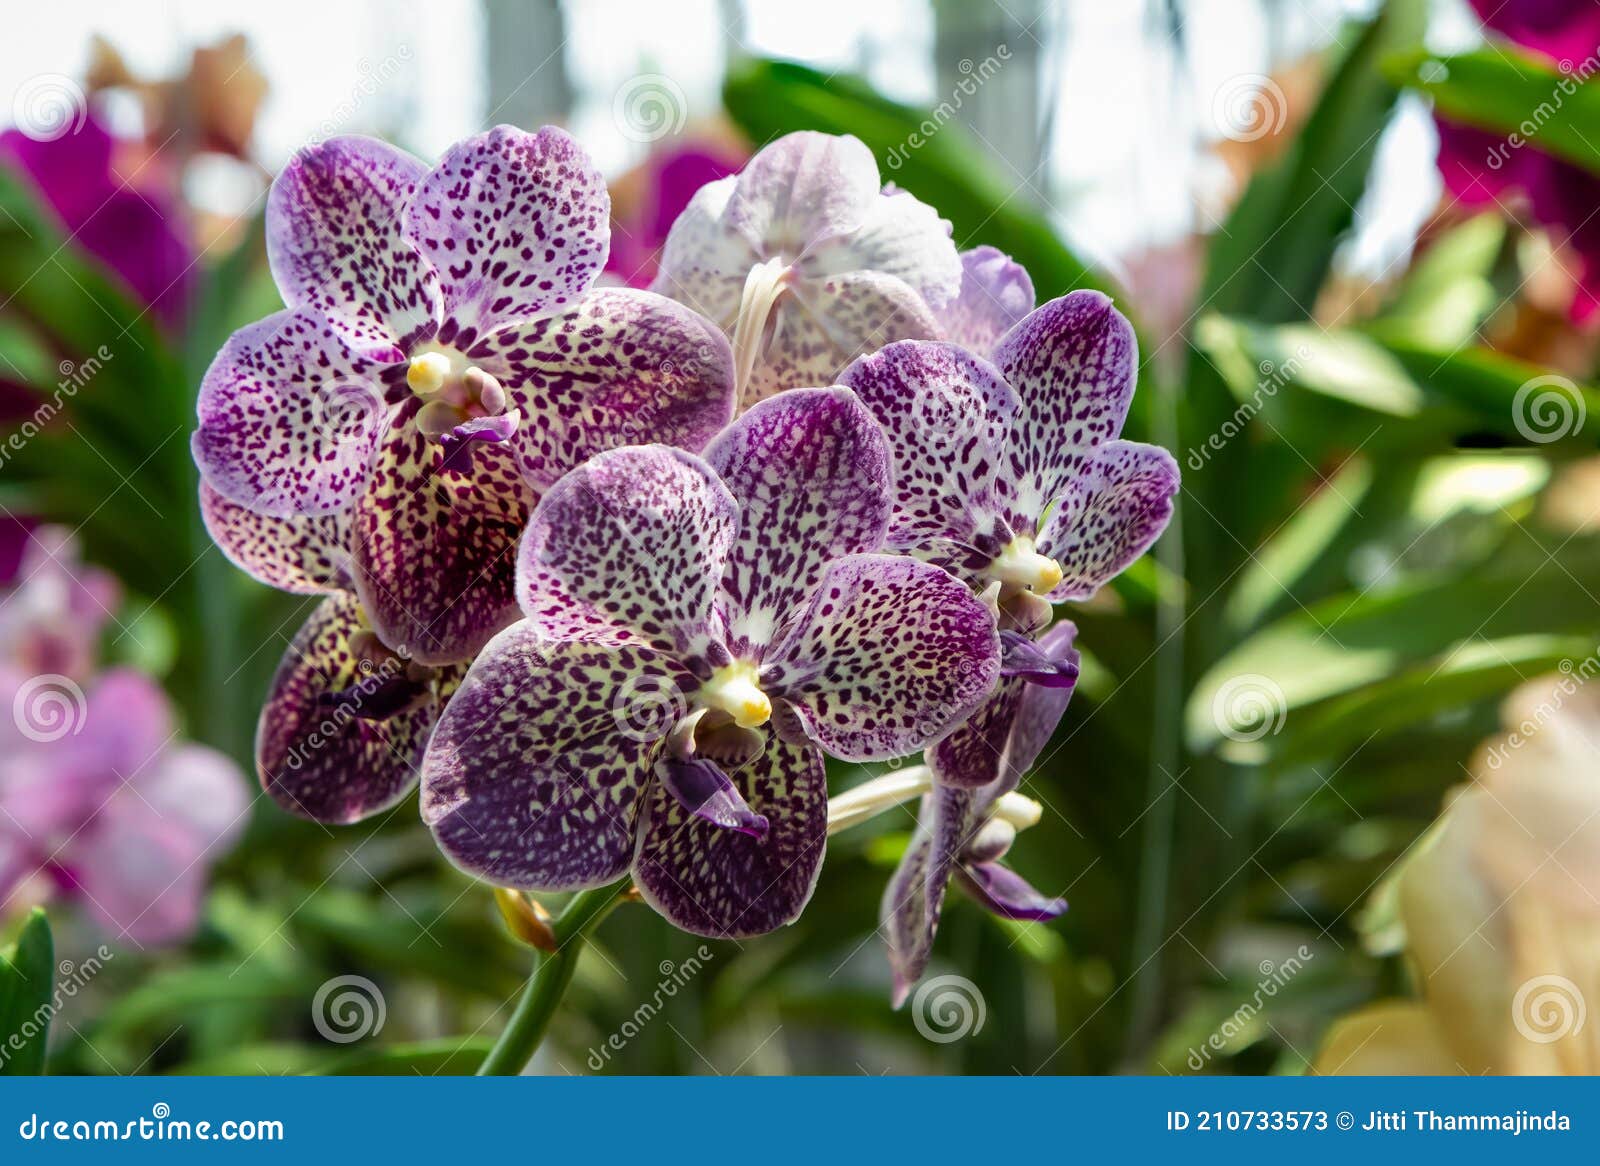 Orquídea Vanda Flores Púrpura Con Manchas Blancas Cultivadas En Un  Invernadero Imagen de archivo - Imagen de postal, flor: 210733573